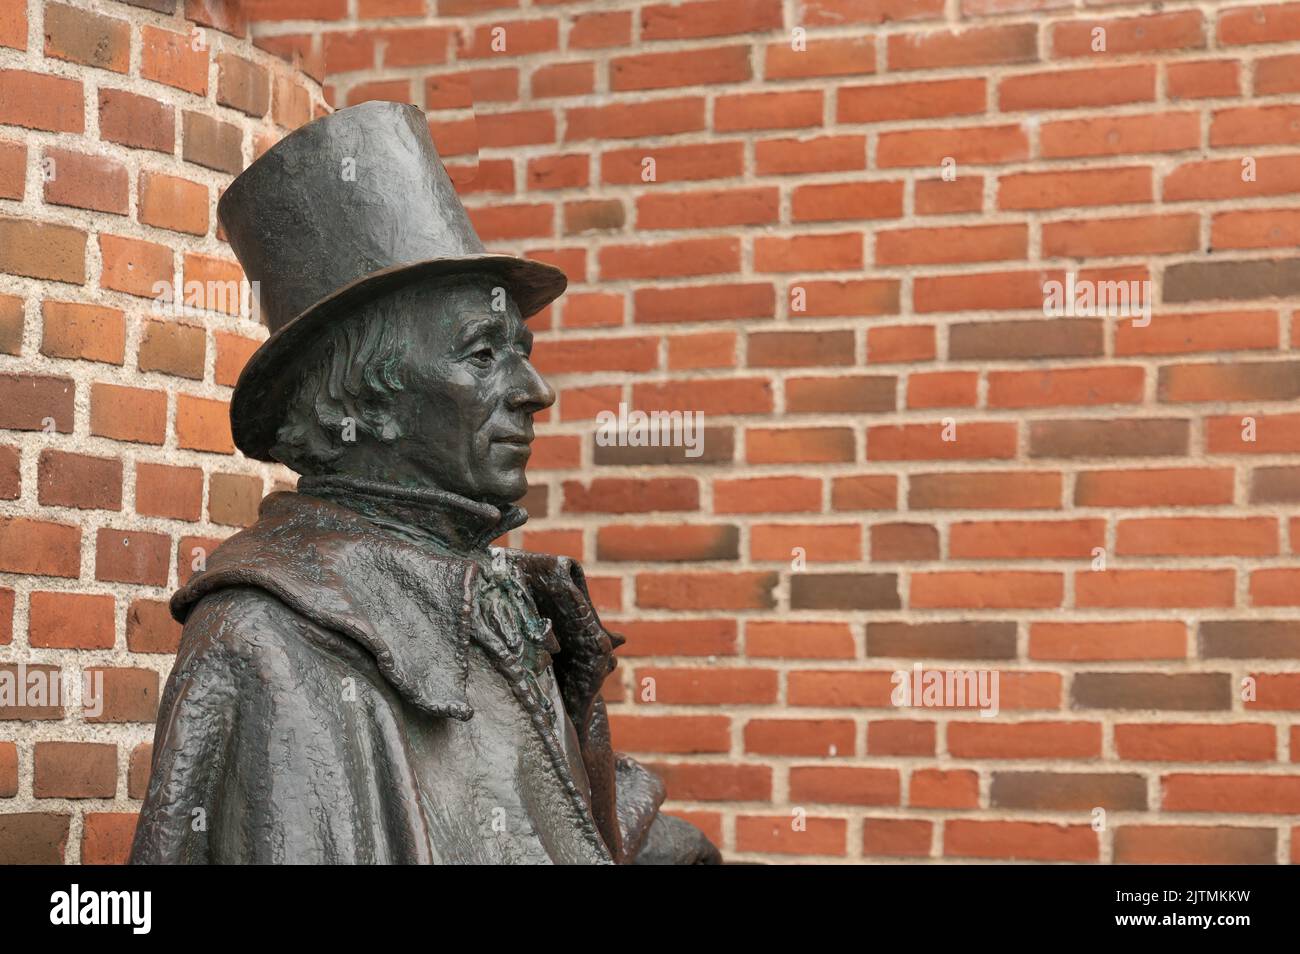 Statue en bronze de l'auteur danois H C Andersen assis en profil contre un mur de briques rouges, Odense, Danemark, 28 août 2022 Banque D'Images